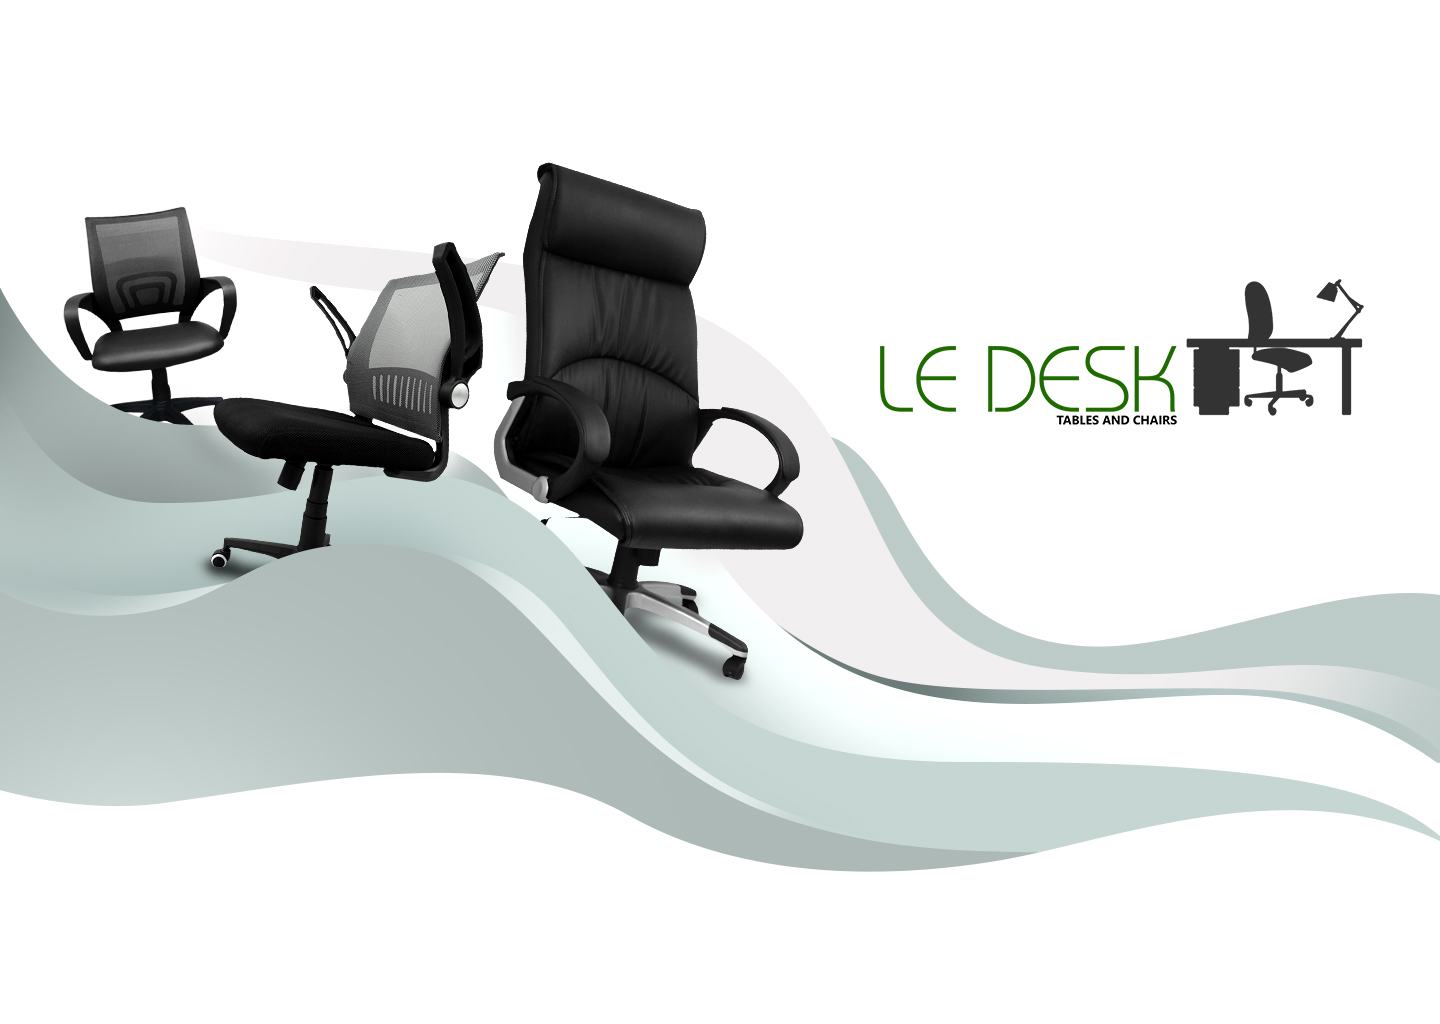 le-desk-design-web-mobile-view